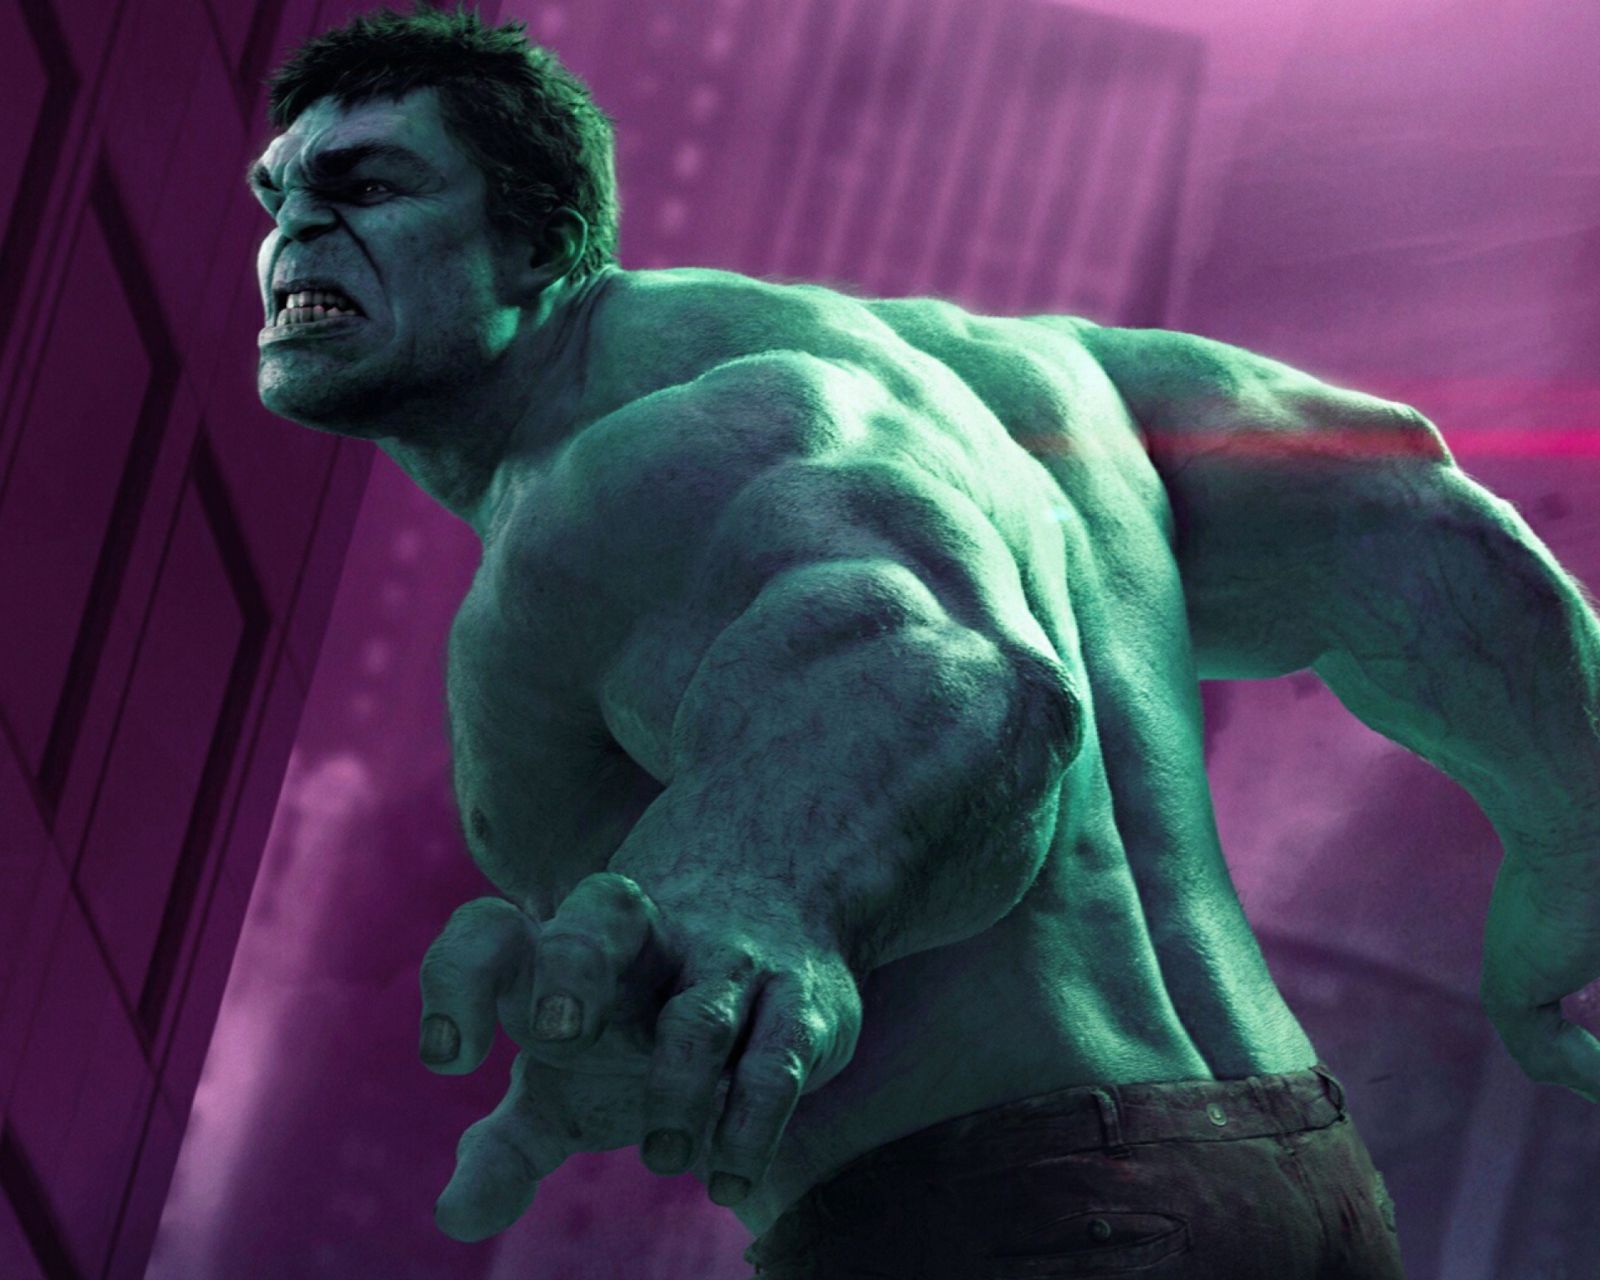 Das Hulk - The Avengers 2012 Wallpaper 1600x1280